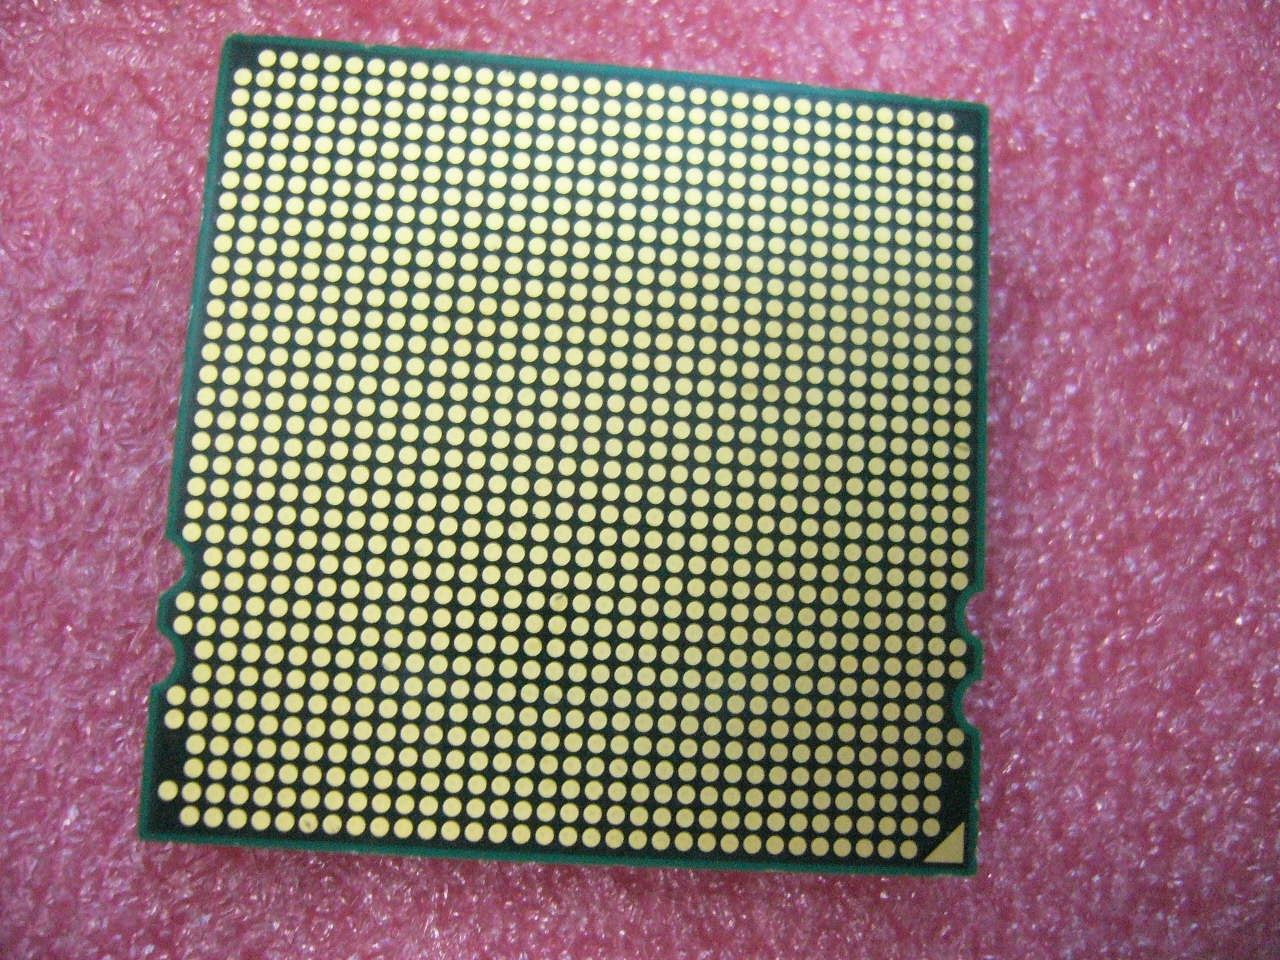 QTY 1x AMD Opteron 2419 EE 1.8 GHz Six Core (OS2419NBS6DGN) CPU Socket F 1207 - zum Schließen ins Bild klicken